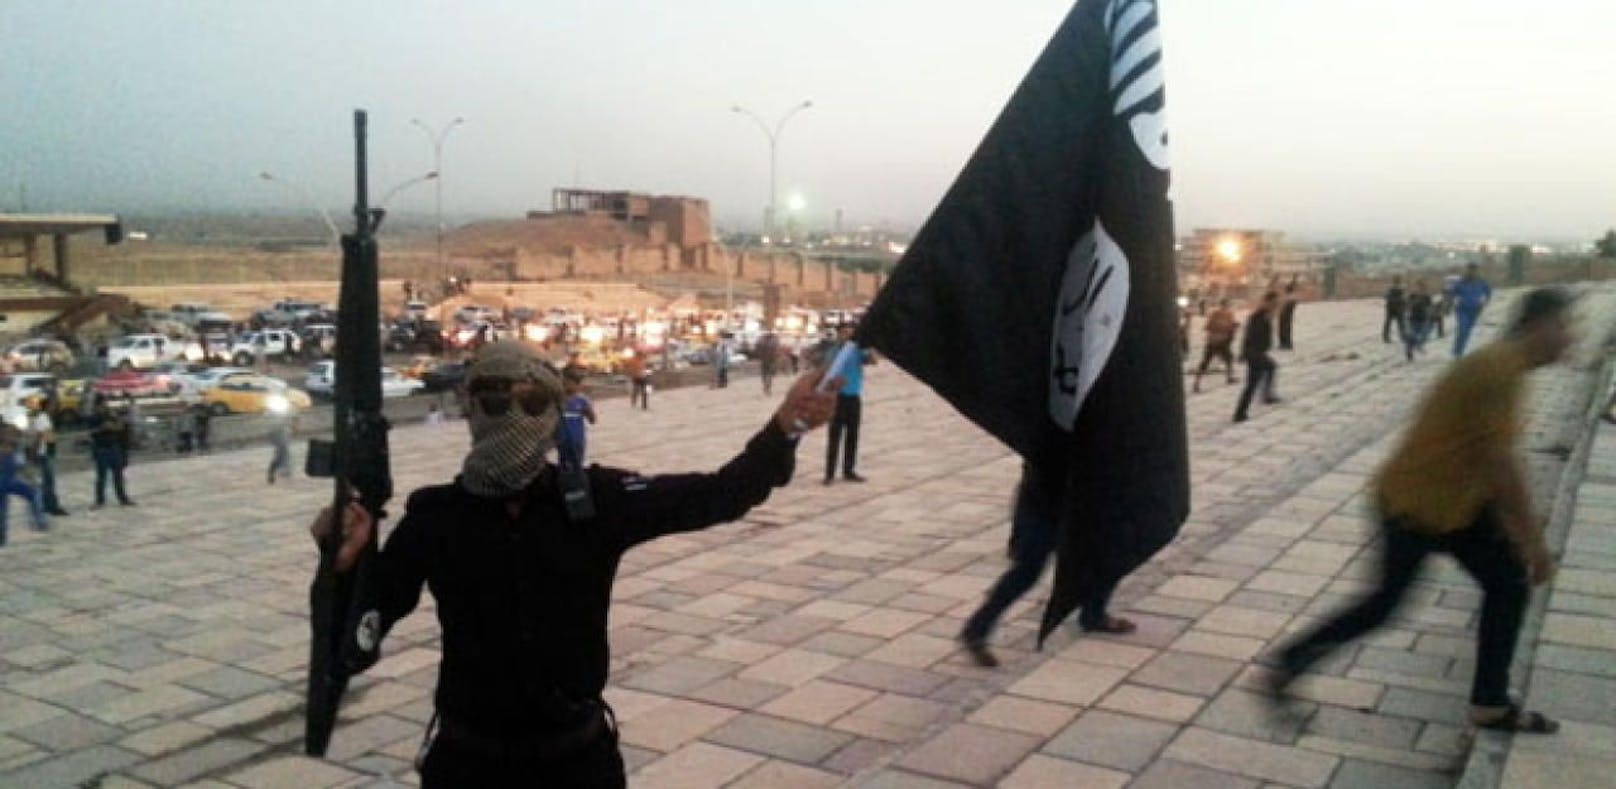 Deutschland nimmt IS-Kämpfern Pass weg